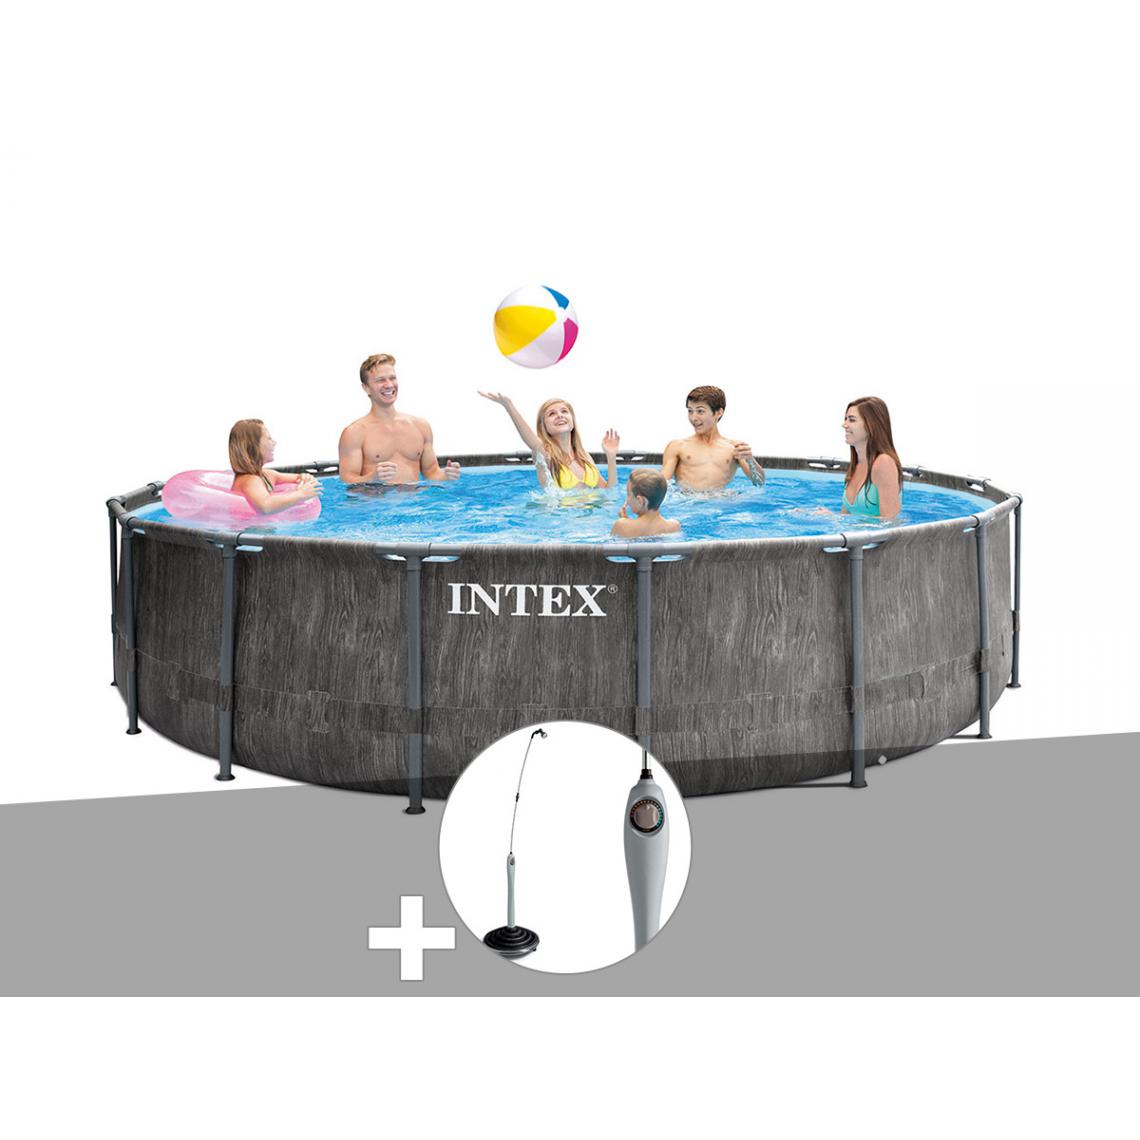 Intex - Kit piscine tubulaire Intex Baltik ronde 4,57 x 1,22 m + Douche solaire - Piscine Tubulaire